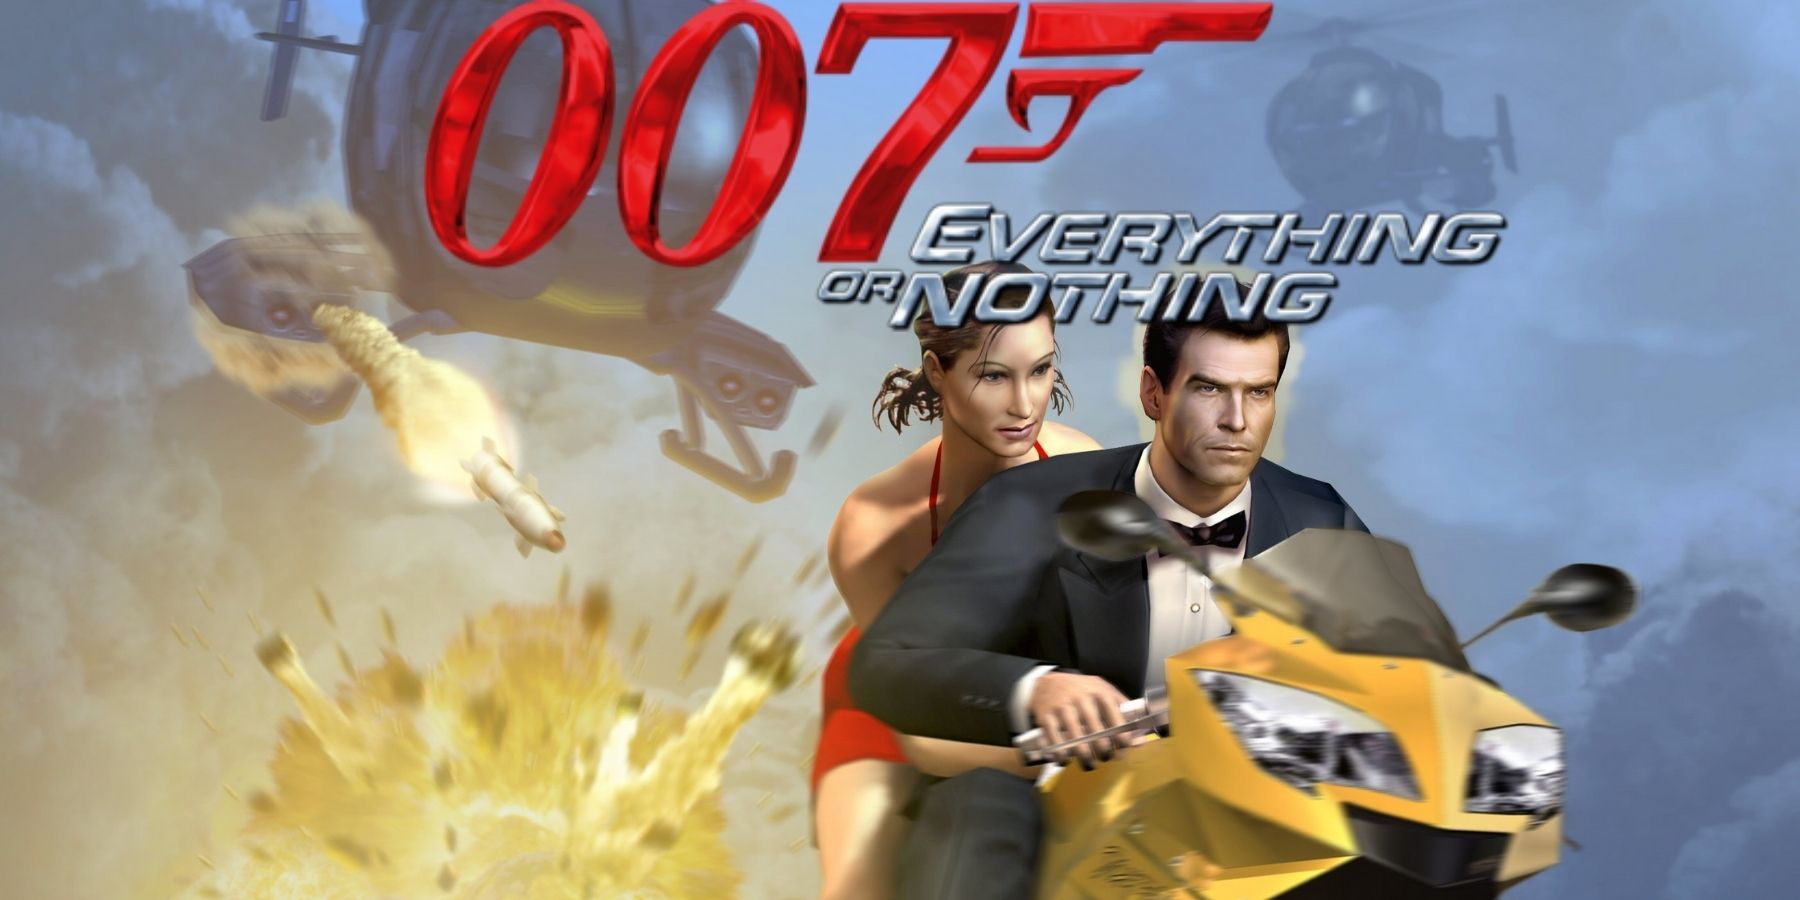 007 james bond everything or nothing pierce brosnan game